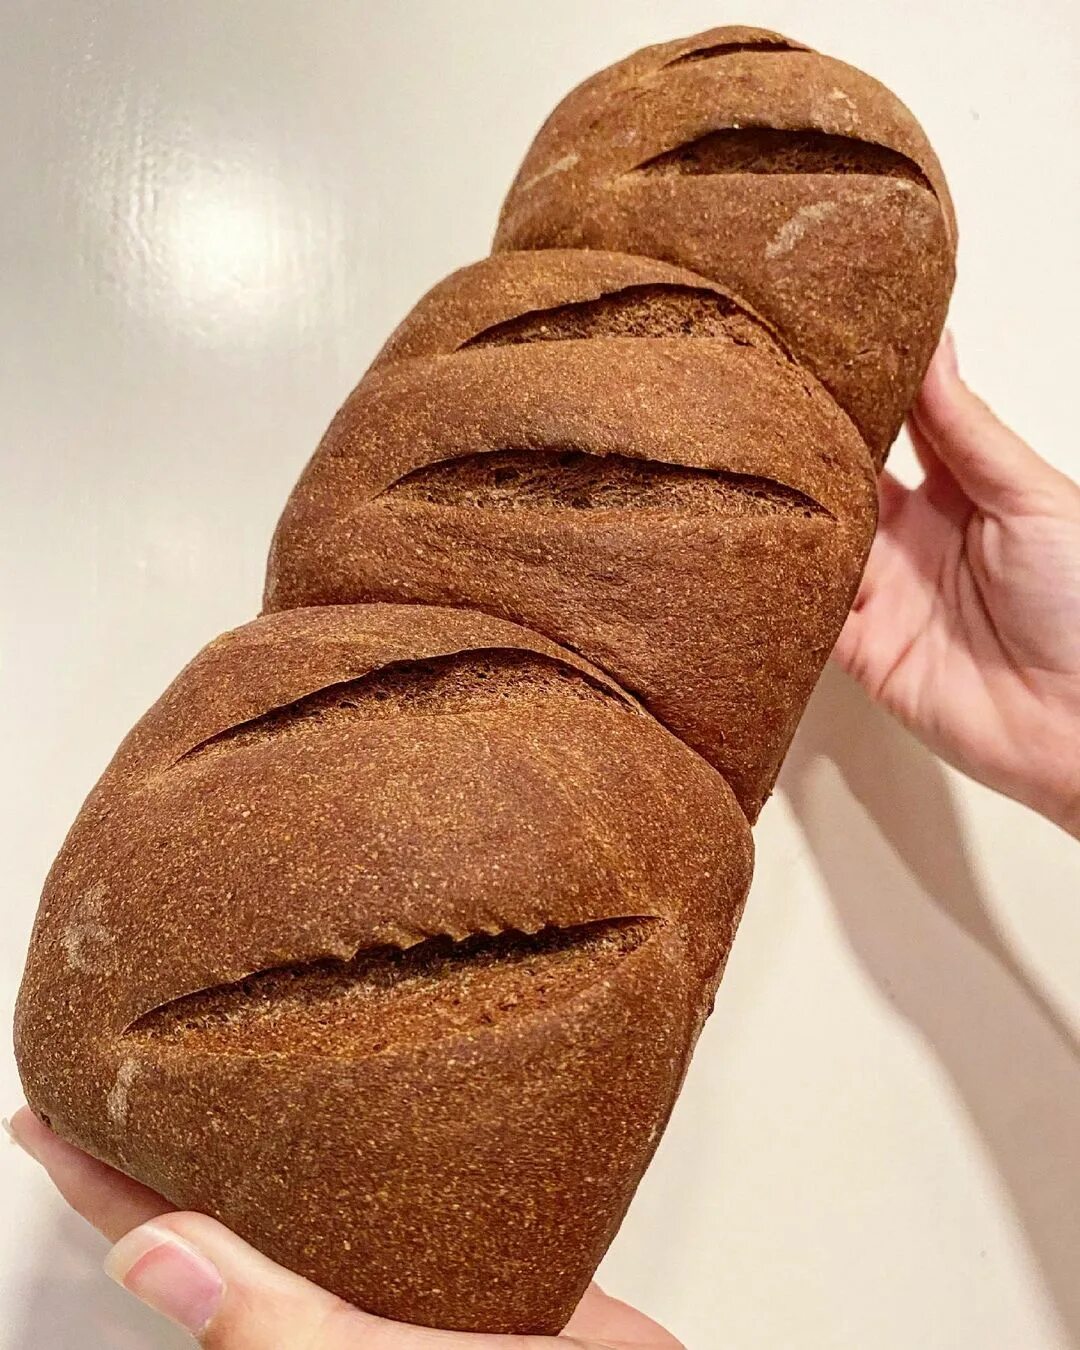 хлеб в форме члена фото 45